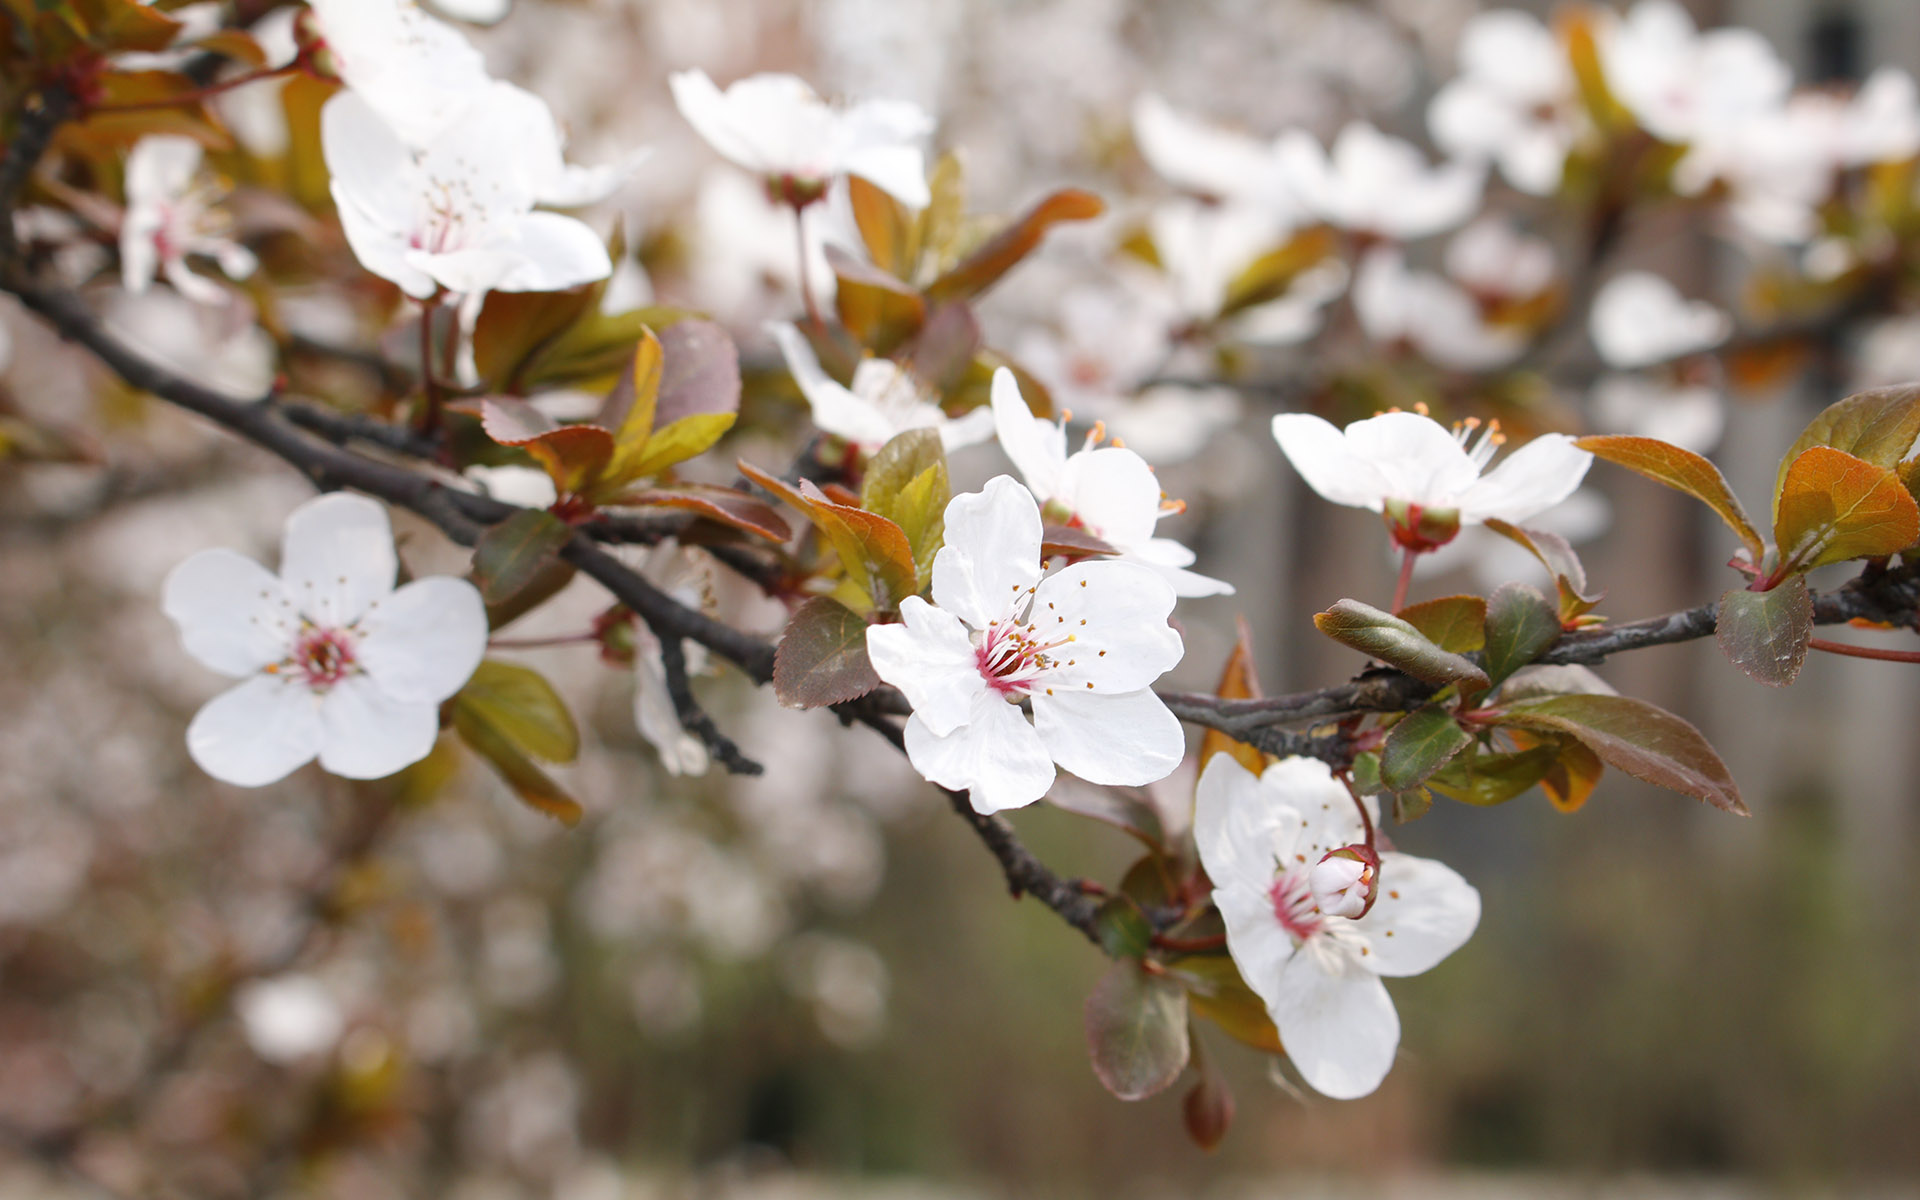 美丽图片素材 唯美纯白樱花高清摄影图片(2)